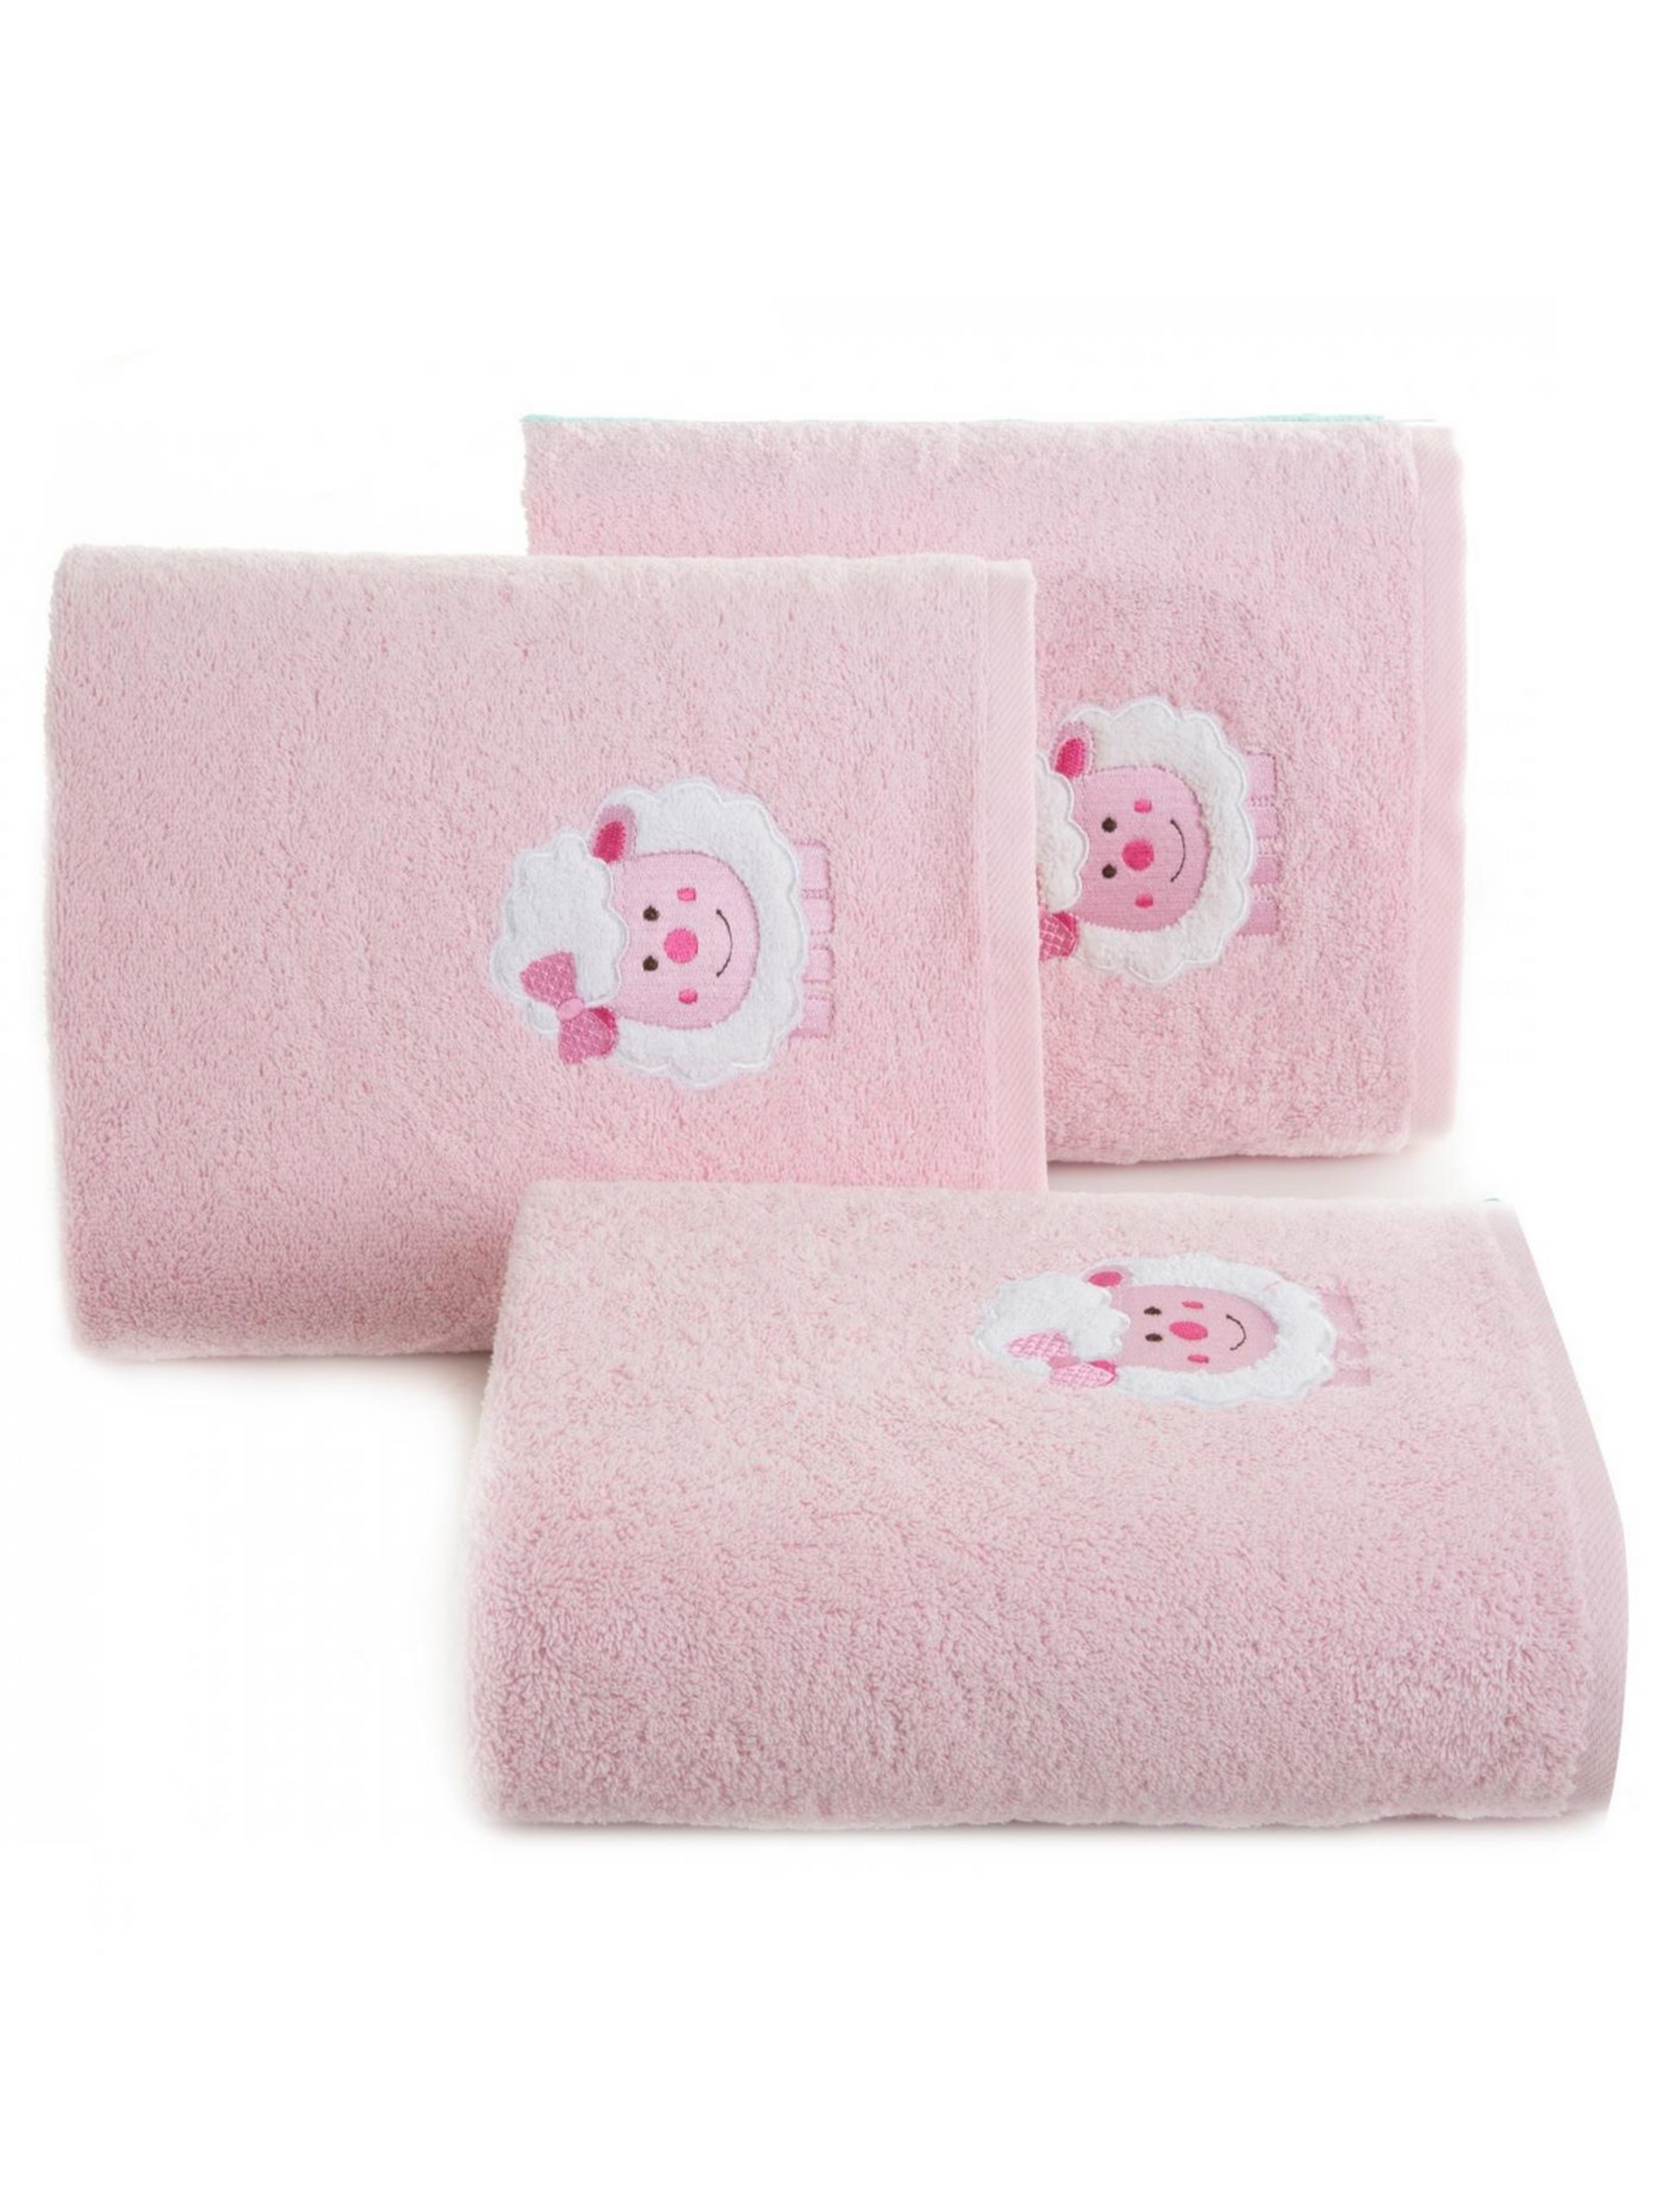 Różowy ręcznik 50x90 cm